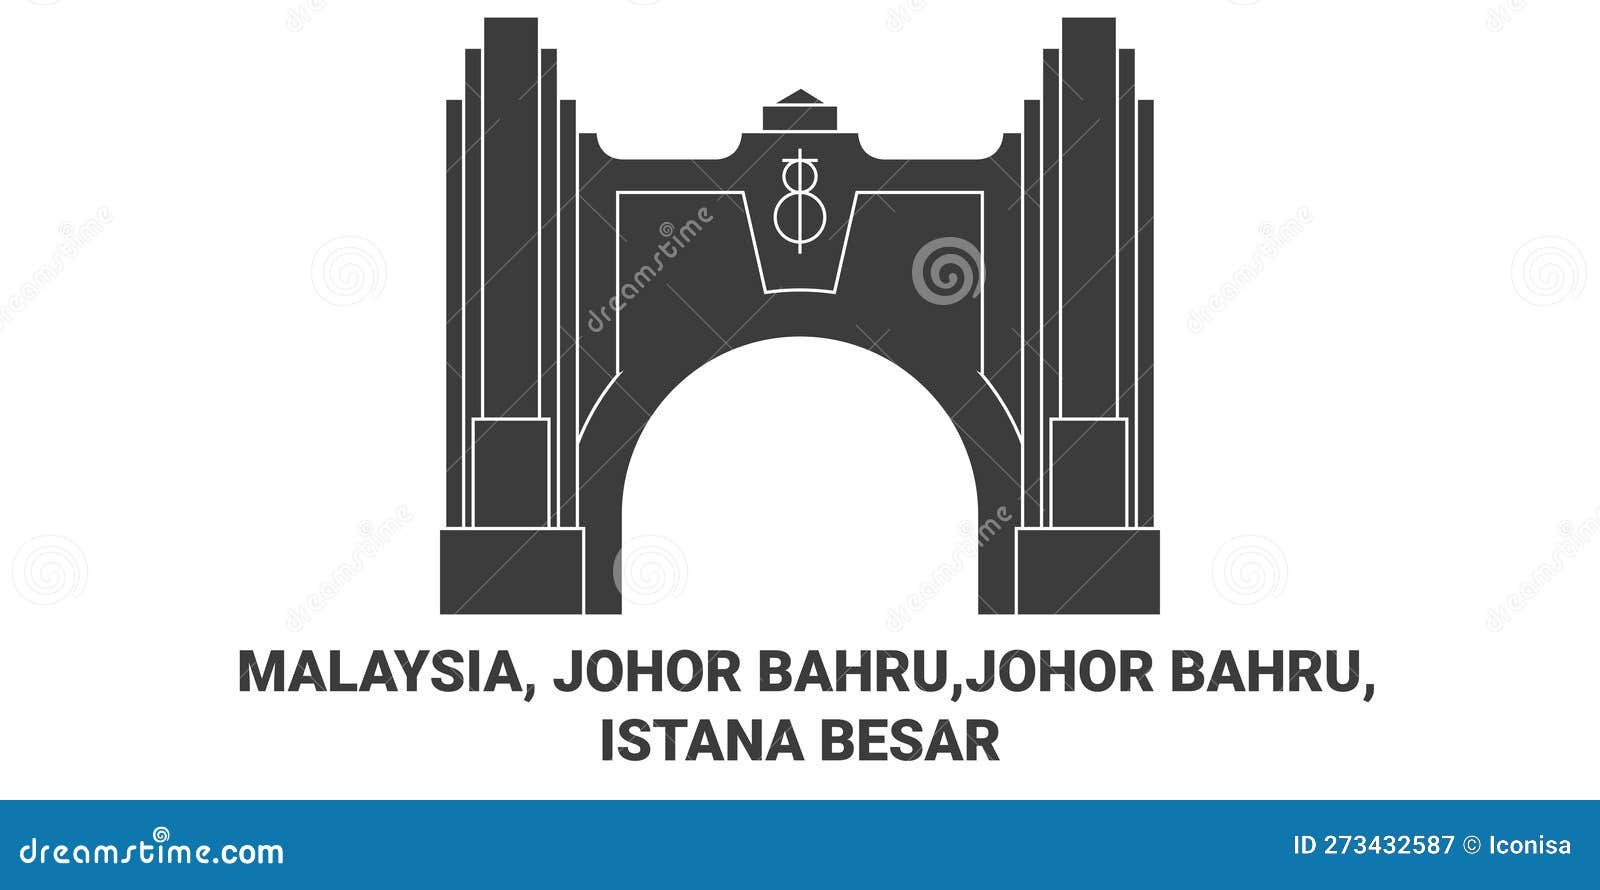 Malaysia, Johor Bahru,Johor Bahru, Istana Besar Travel Landmark Vector ...